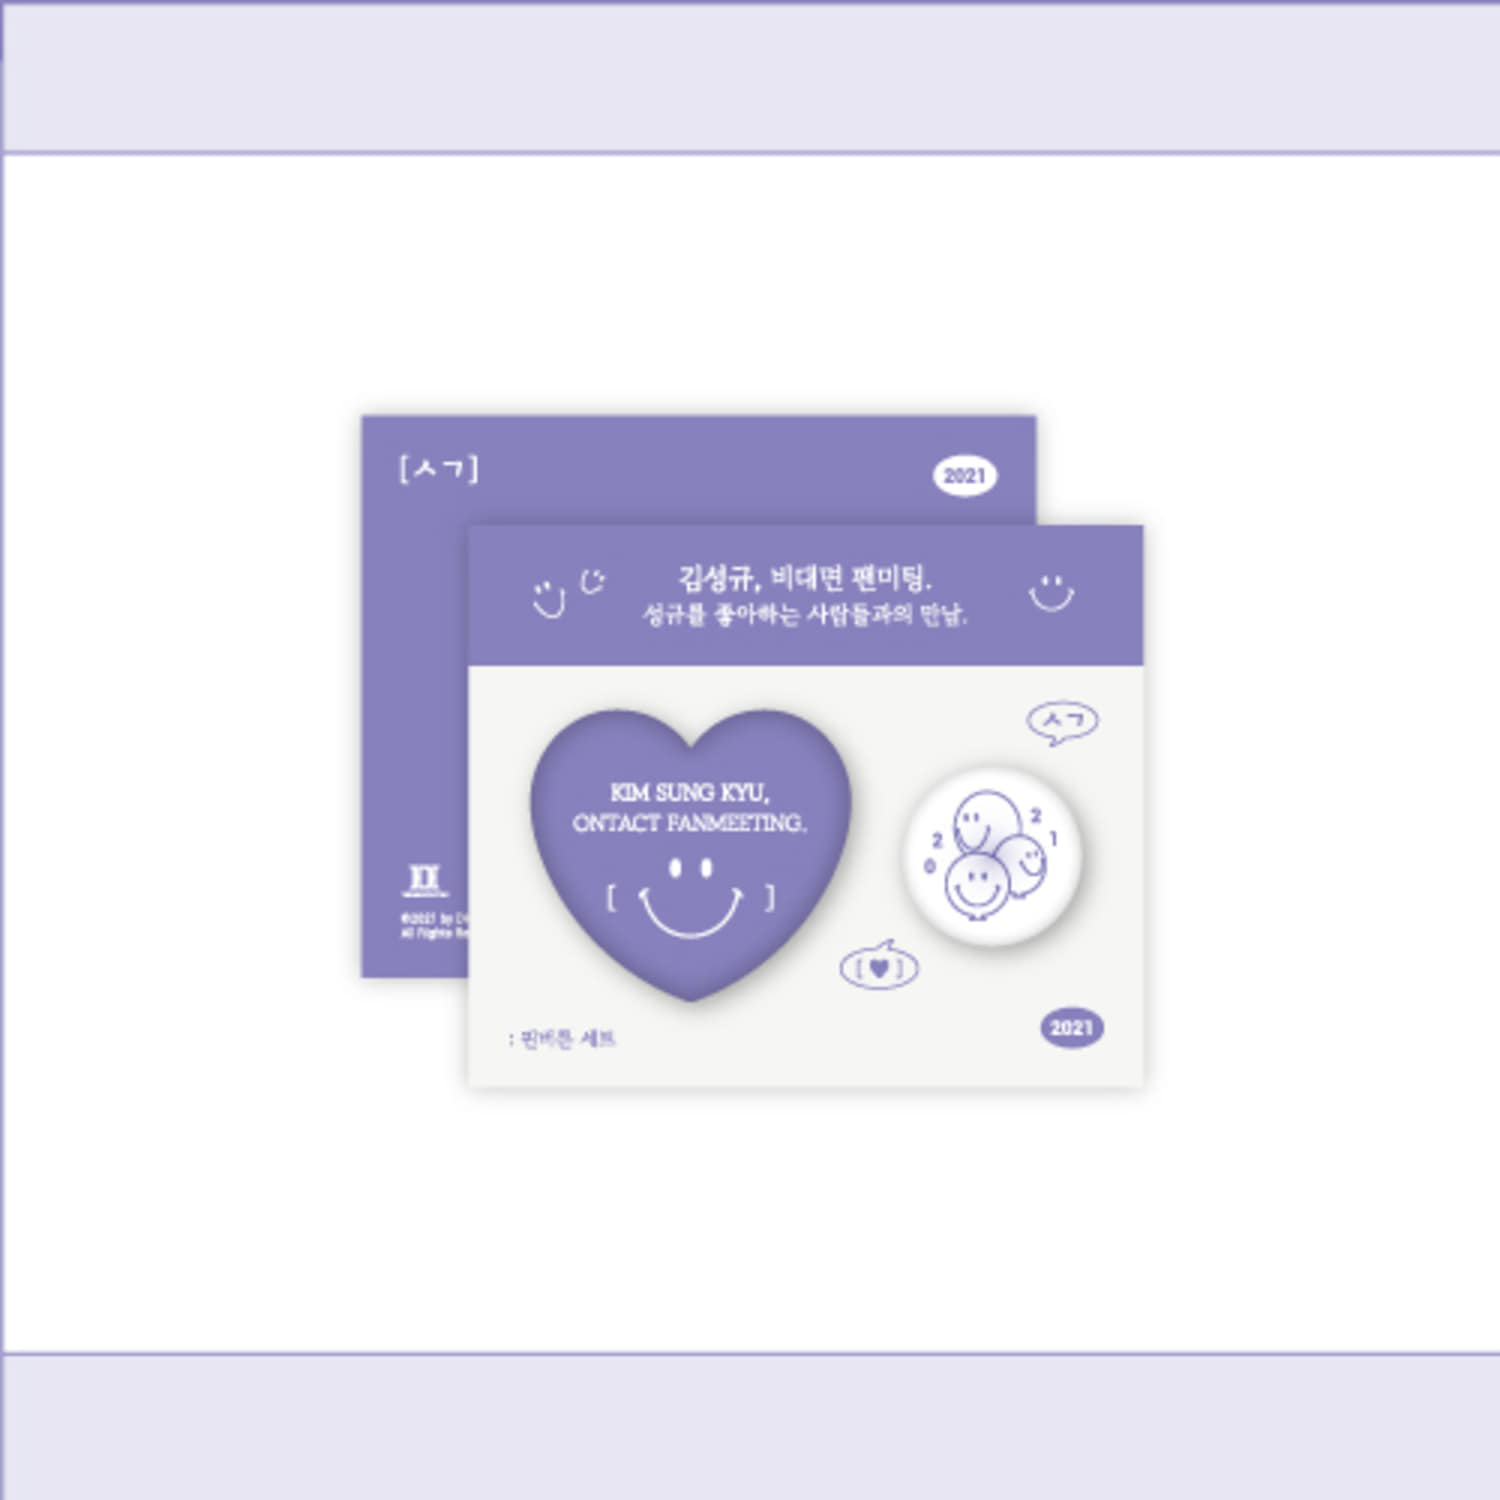 김성규(KIM SUNG KYU) [ㅅㄱ] Official MD - 핀버튼 세트 Pin Button Set